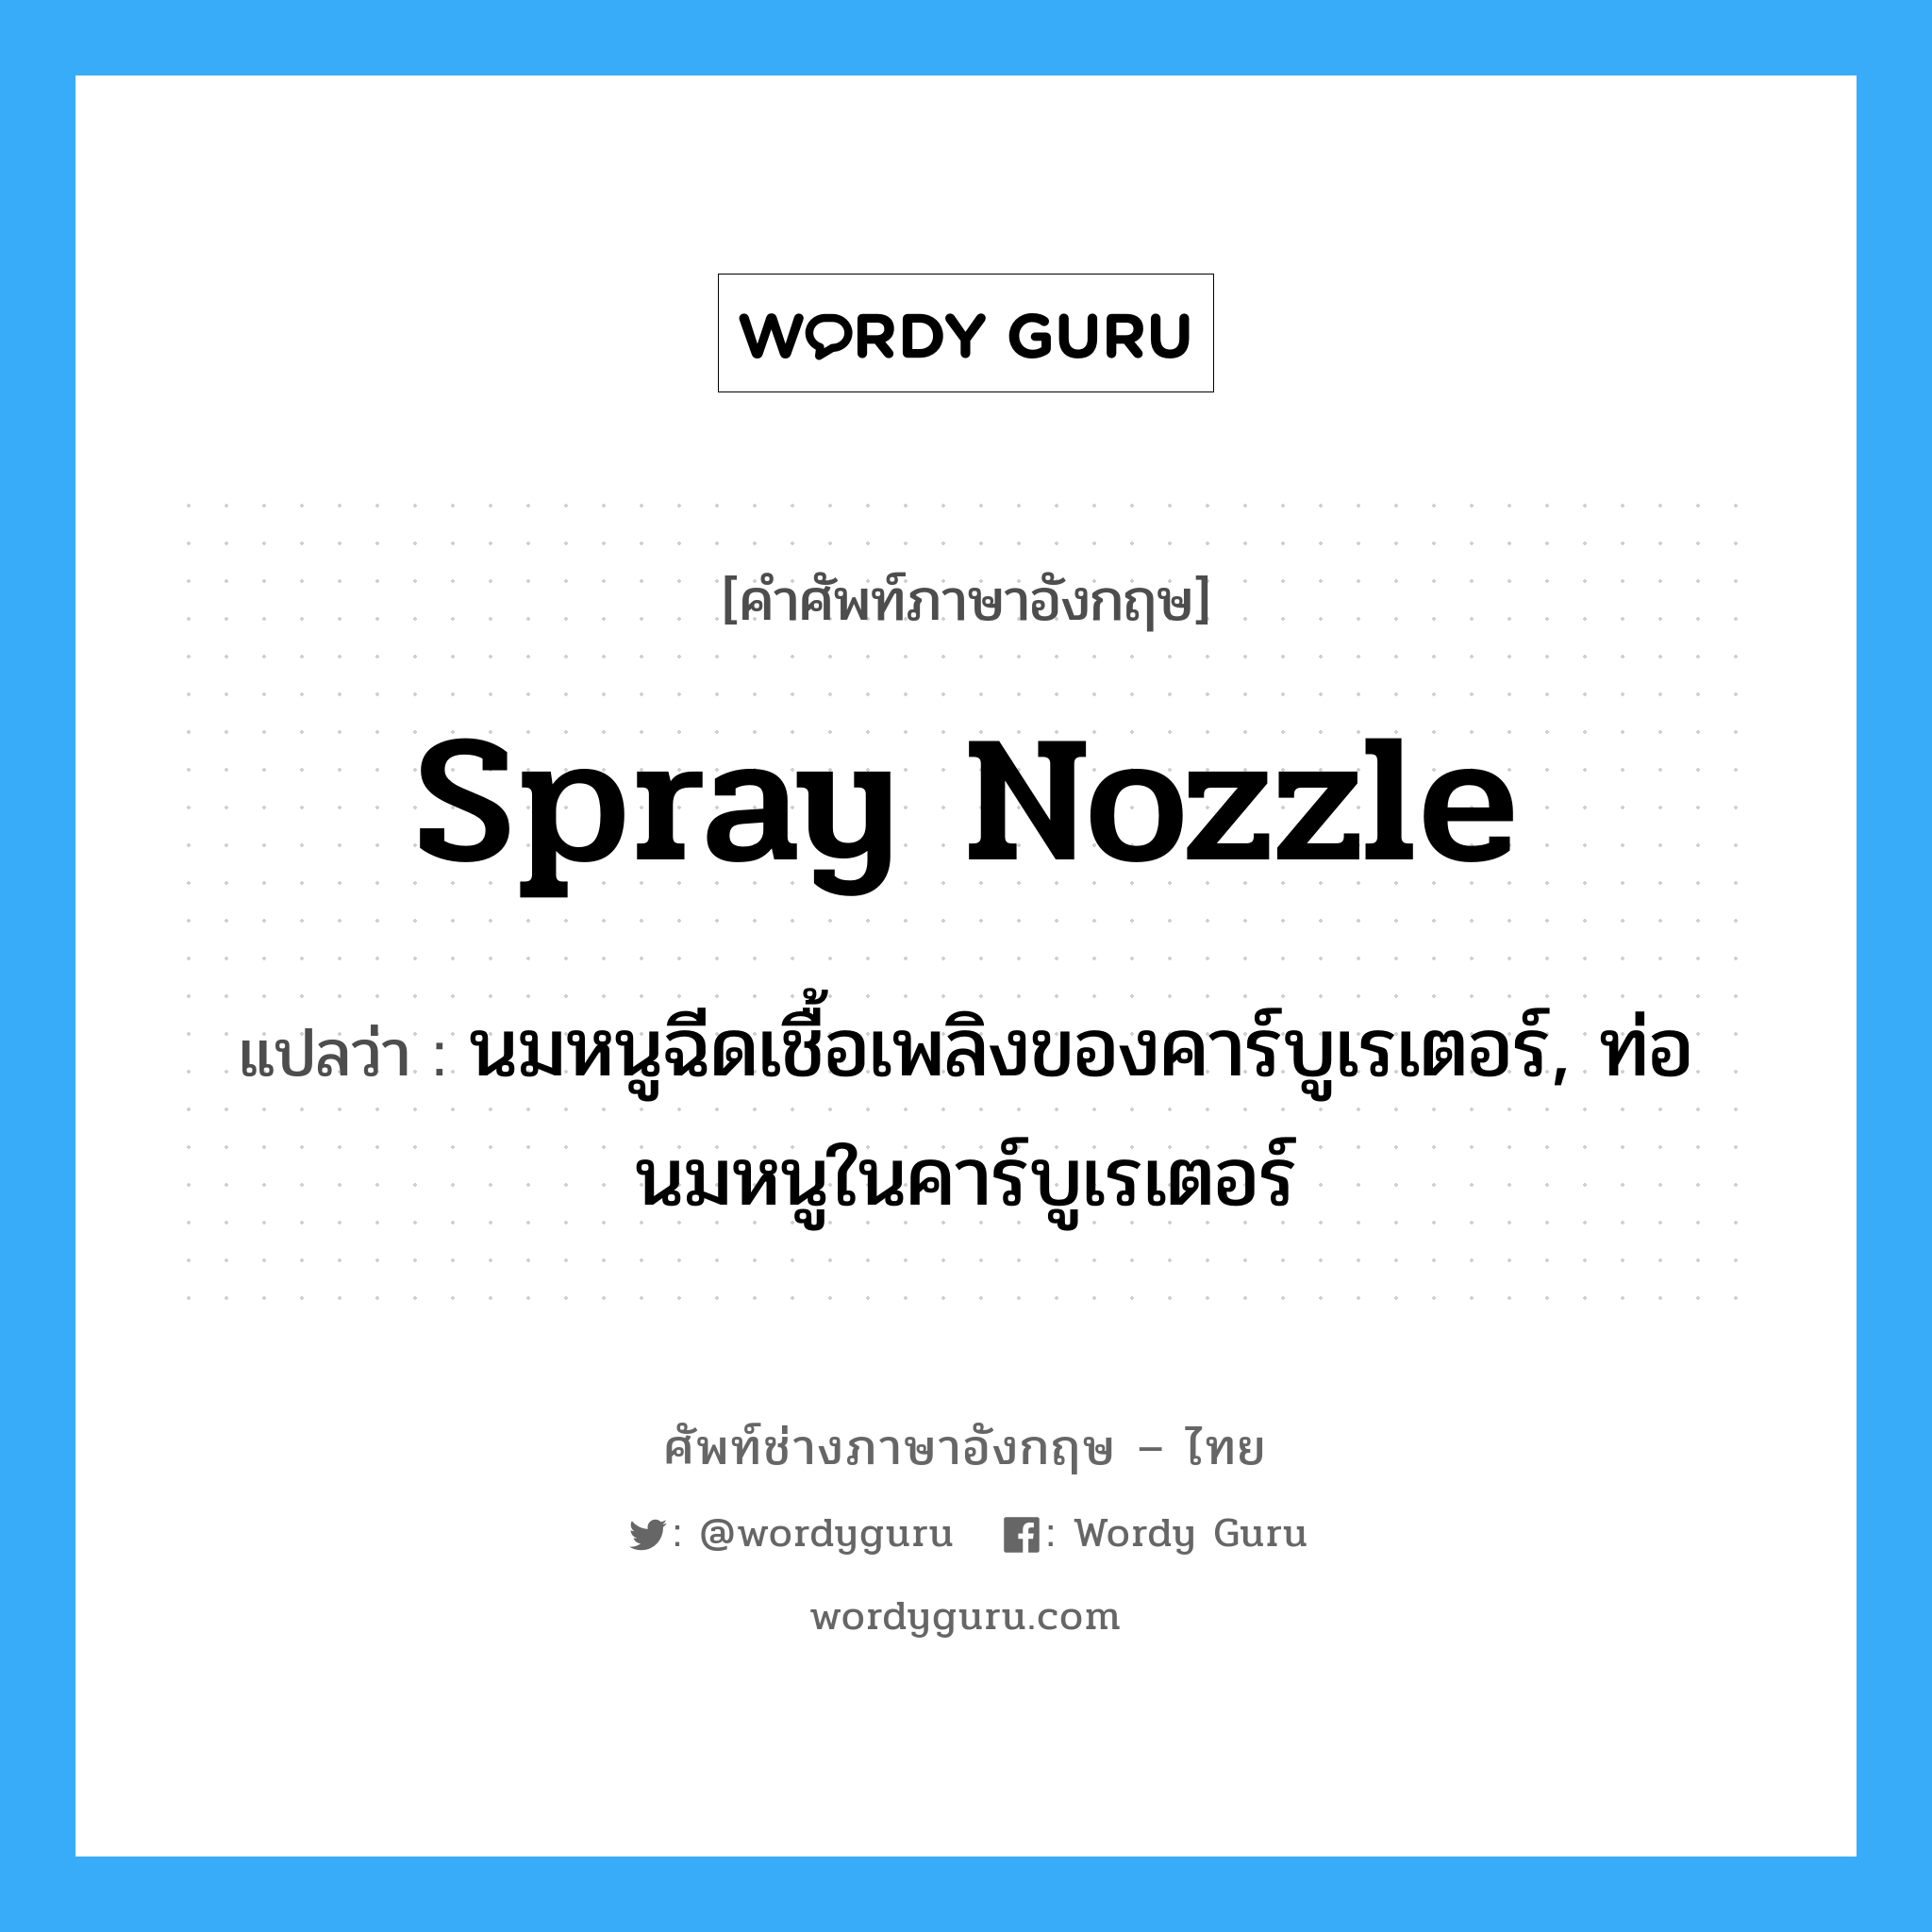 spray nozzle แปลว่า?, คำศัพท์ช่างภาษาอังกฤษ - ไทย spray nozzle คำศัพท์ภาษาอังกฤษ spray nozzle แปลว่า นมหนูฉีดเชื้อเพลิงของคาร์บูเรเตอร์, ท่อนมหนูในคาร์บูเรเตอร์